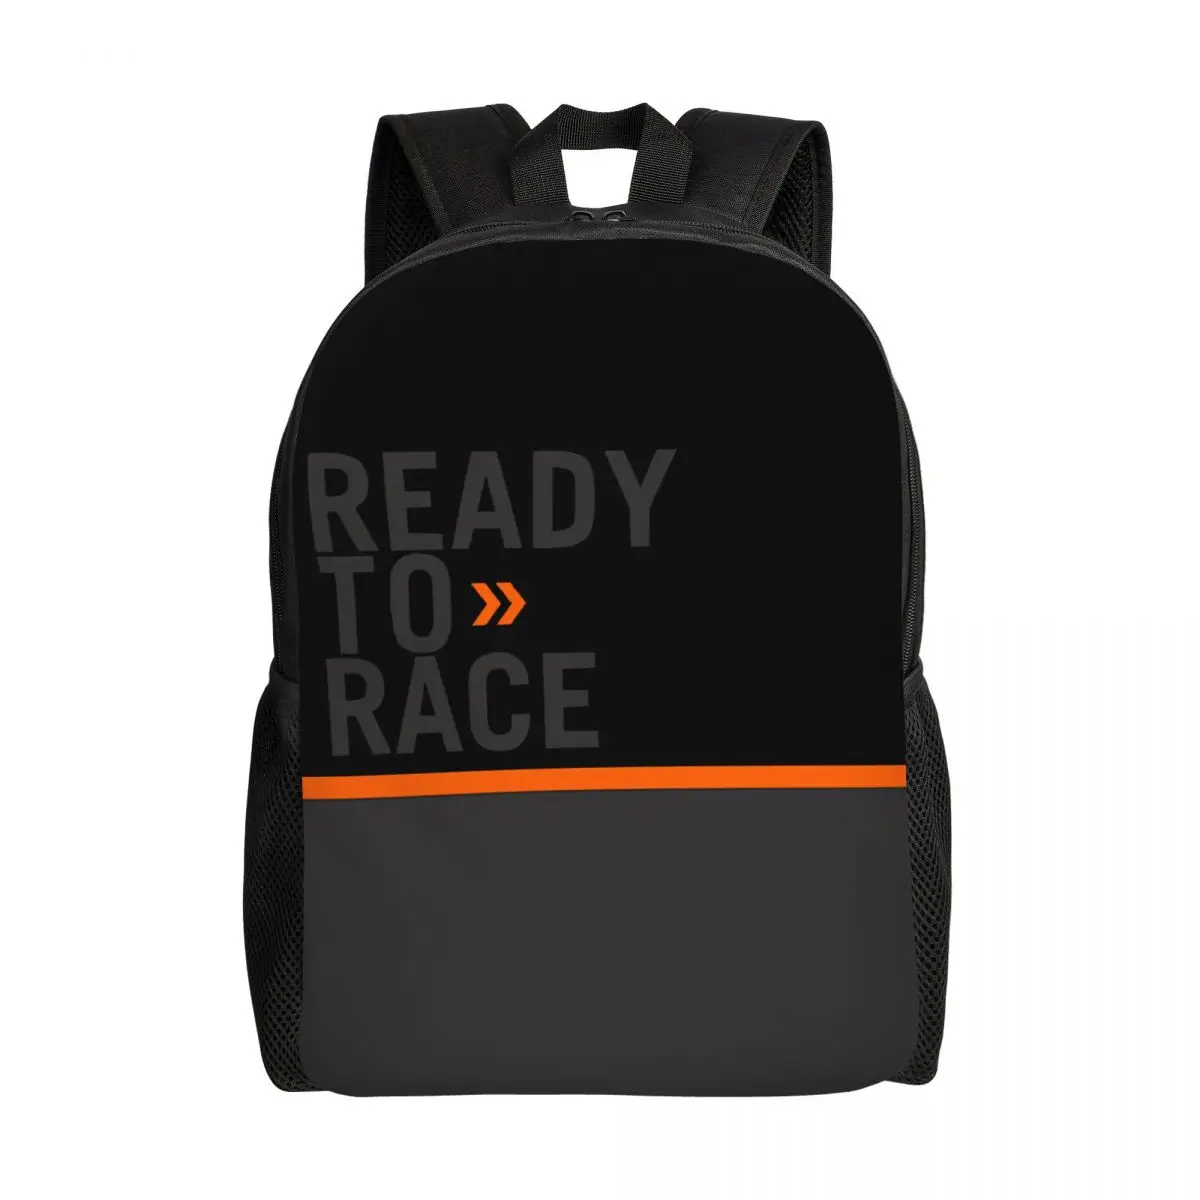 

Дорожный рюкзак с логотипом Ready To Race, школьный ранец для компьютера, спортивная гоночная сумка для мотоциклистов, студентов колледжей, рюкзаки